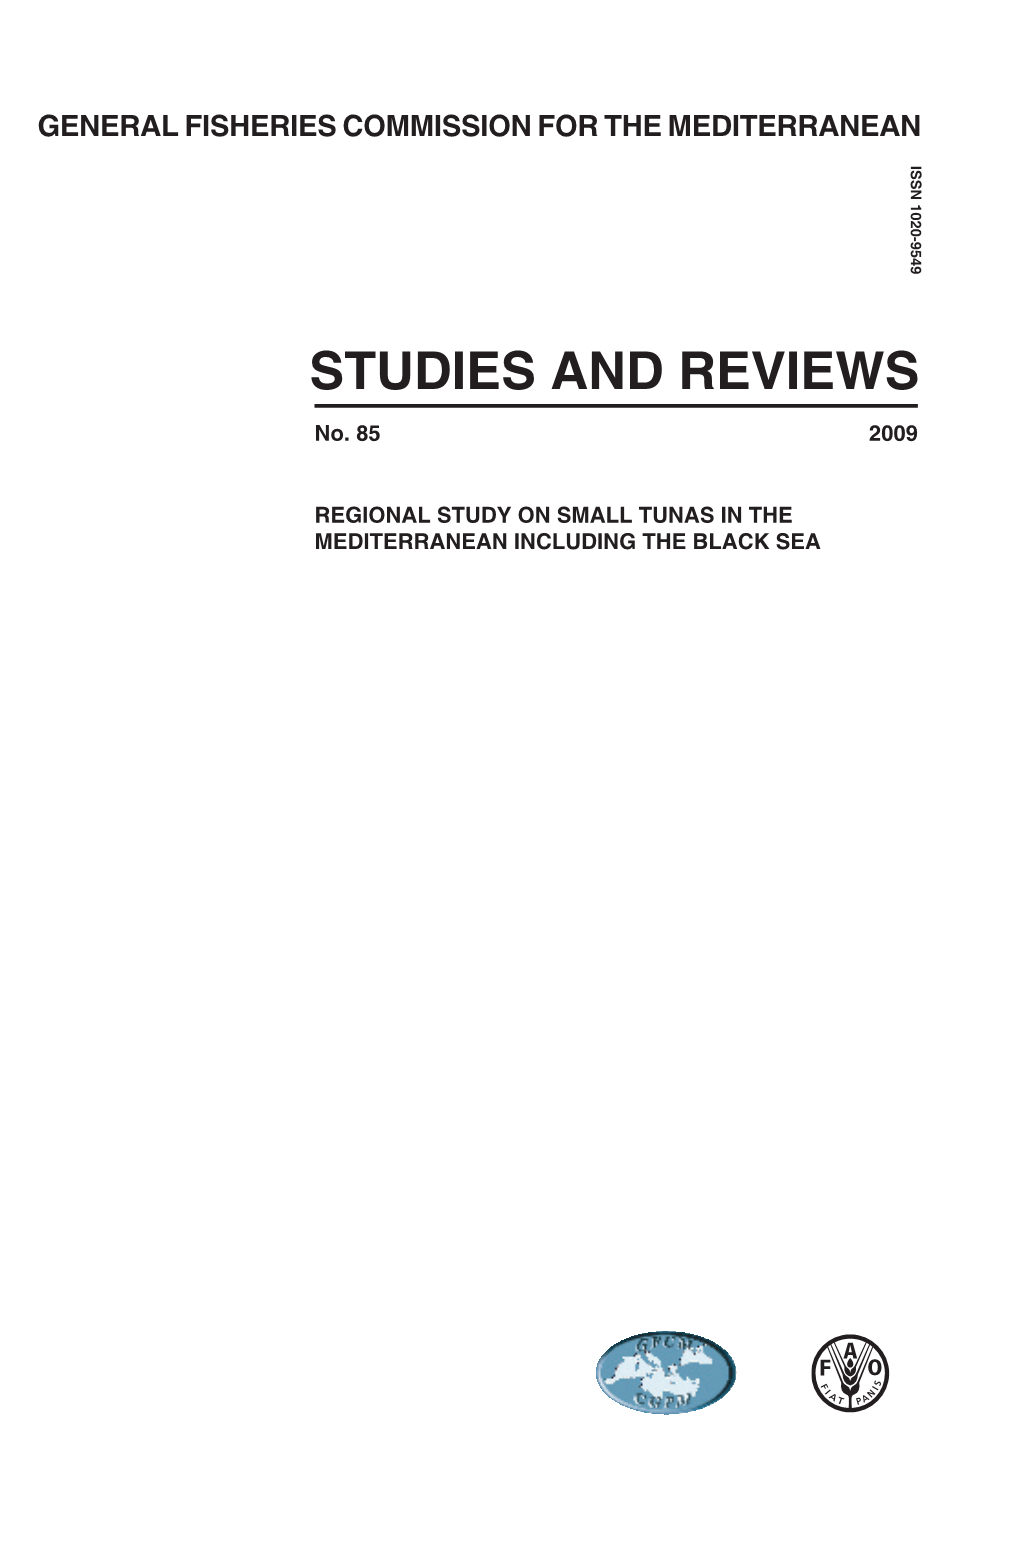 Studies and Reviews N.85